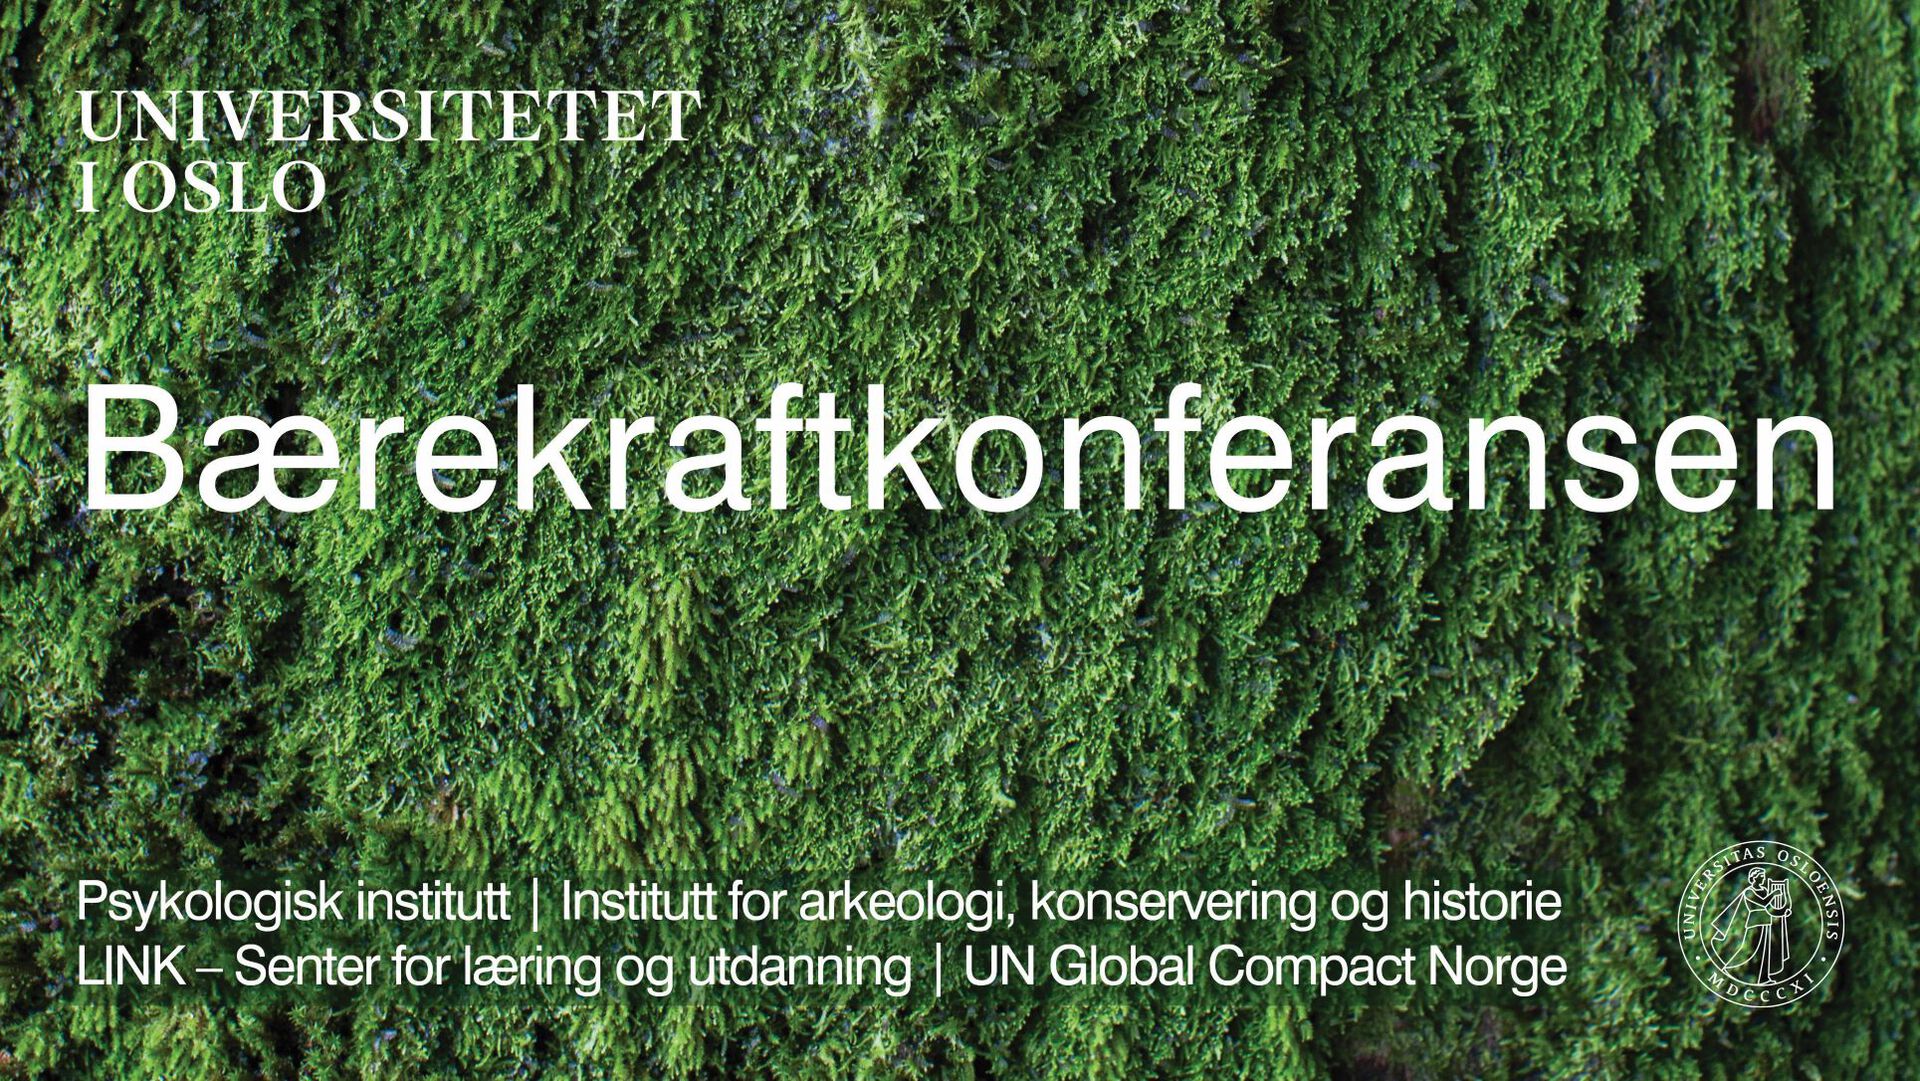 Hvit tekst mot grønn mose som bakgrunn. UiO-logo i hjørnet.Titte, sentralt i bildet: Bærekraftkonferansen. Tekst i bunn av bildet: Psykologisk institutt, Institutt for arkeologi, konservering og historie, LINK Senter for læring og utdanning, UN Global Compact Norge 